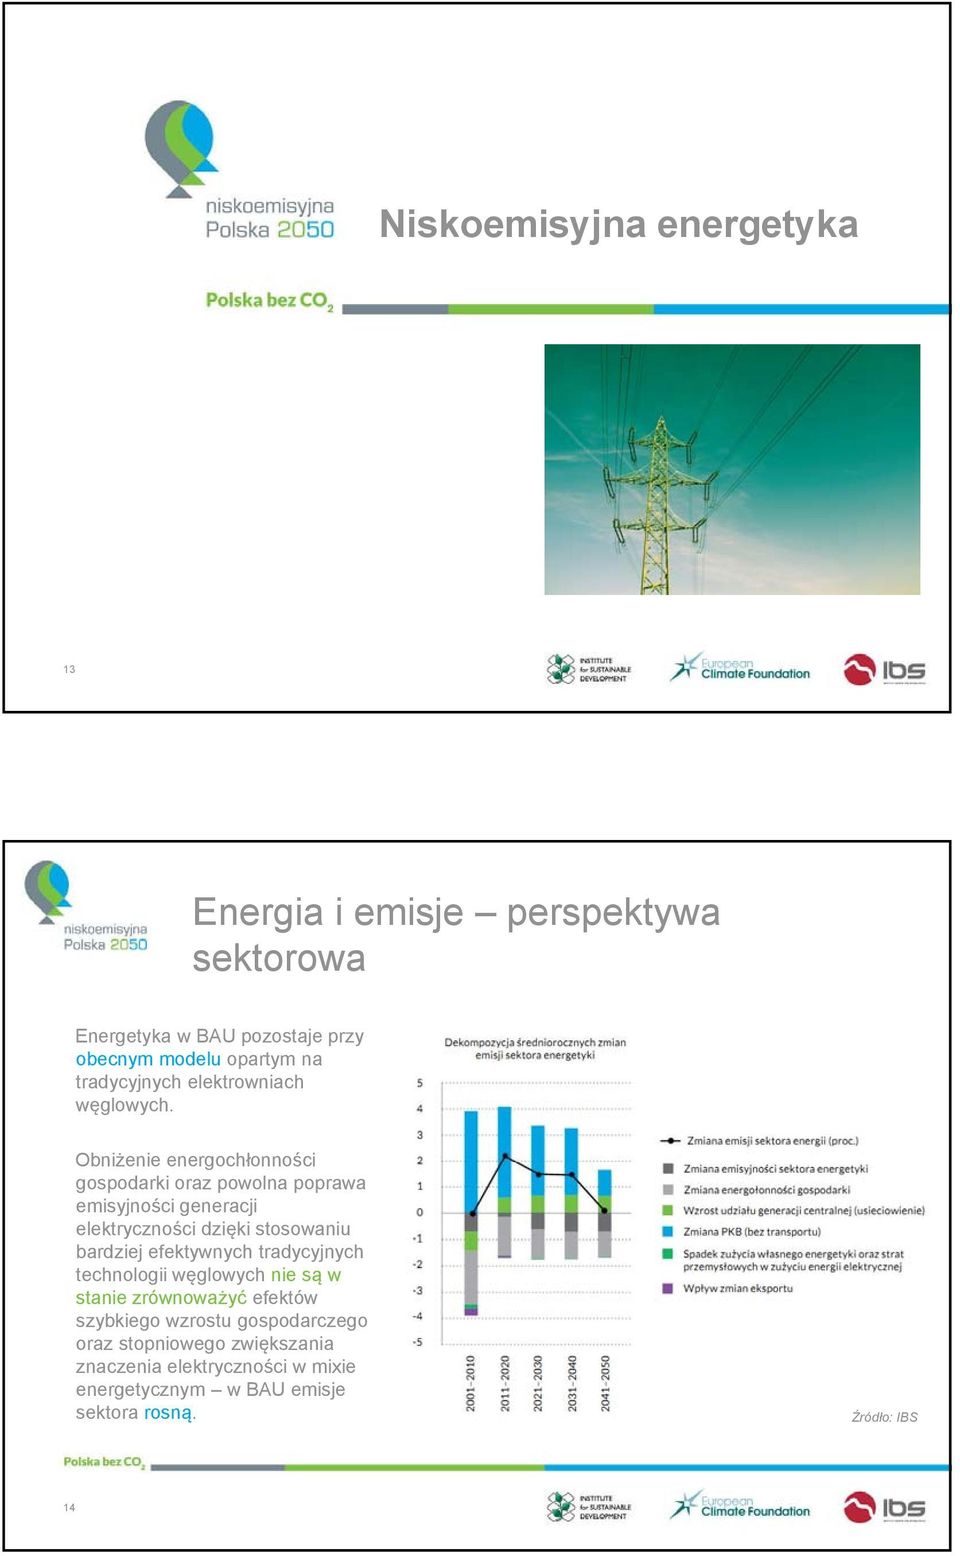 Obniżenie energochłonności gospodarki oraz powolna poprawa emisyjności generacji elektryczności dzięki stosowaniu bardziej